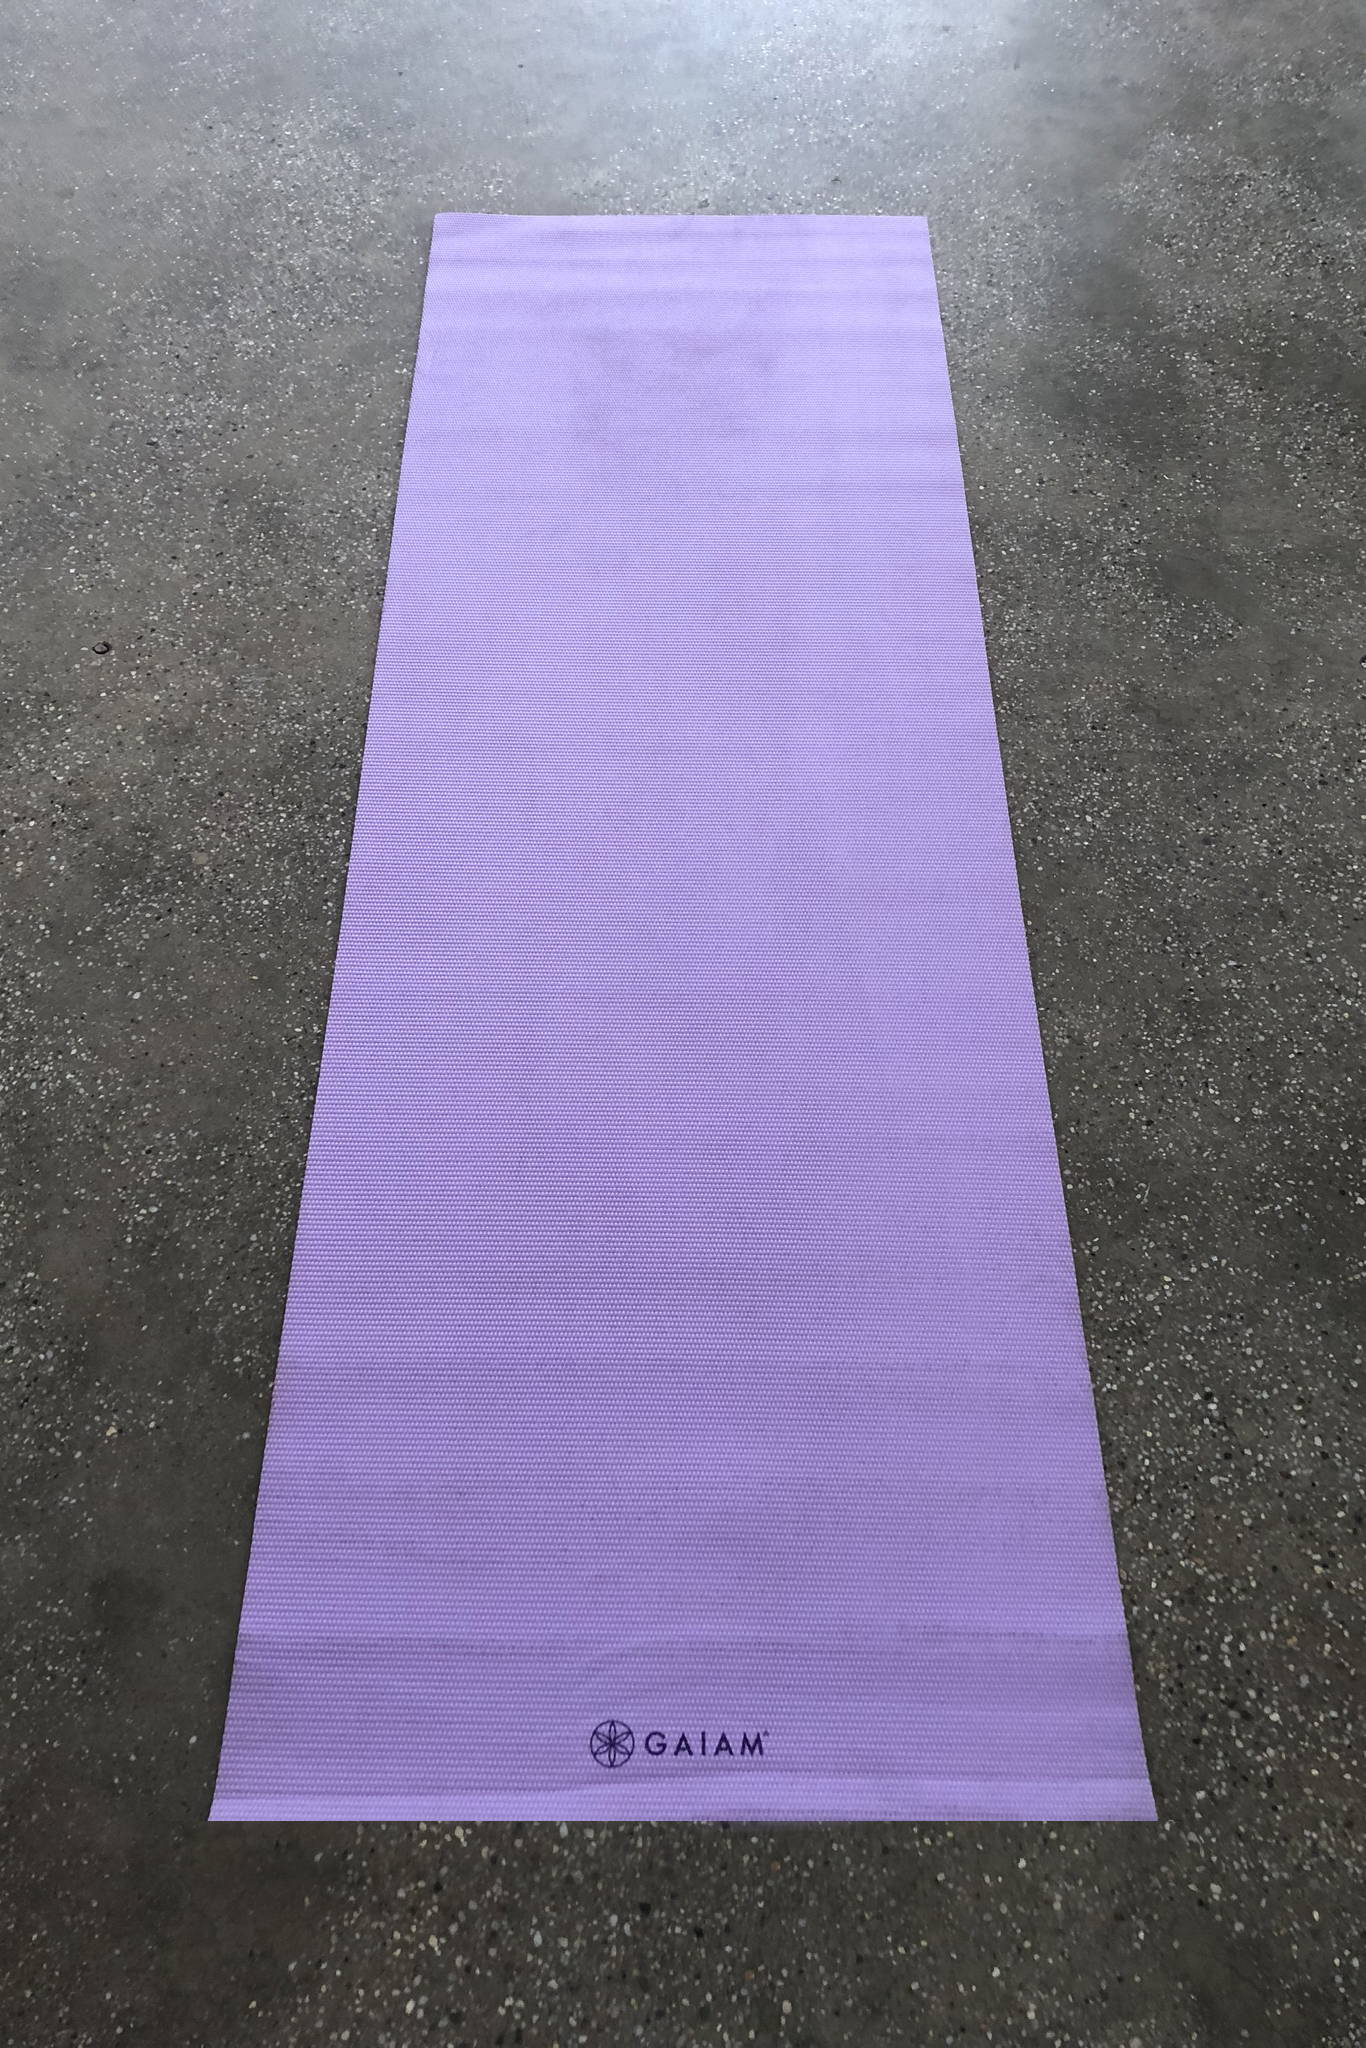 Gaiam Yoga Mat SP088